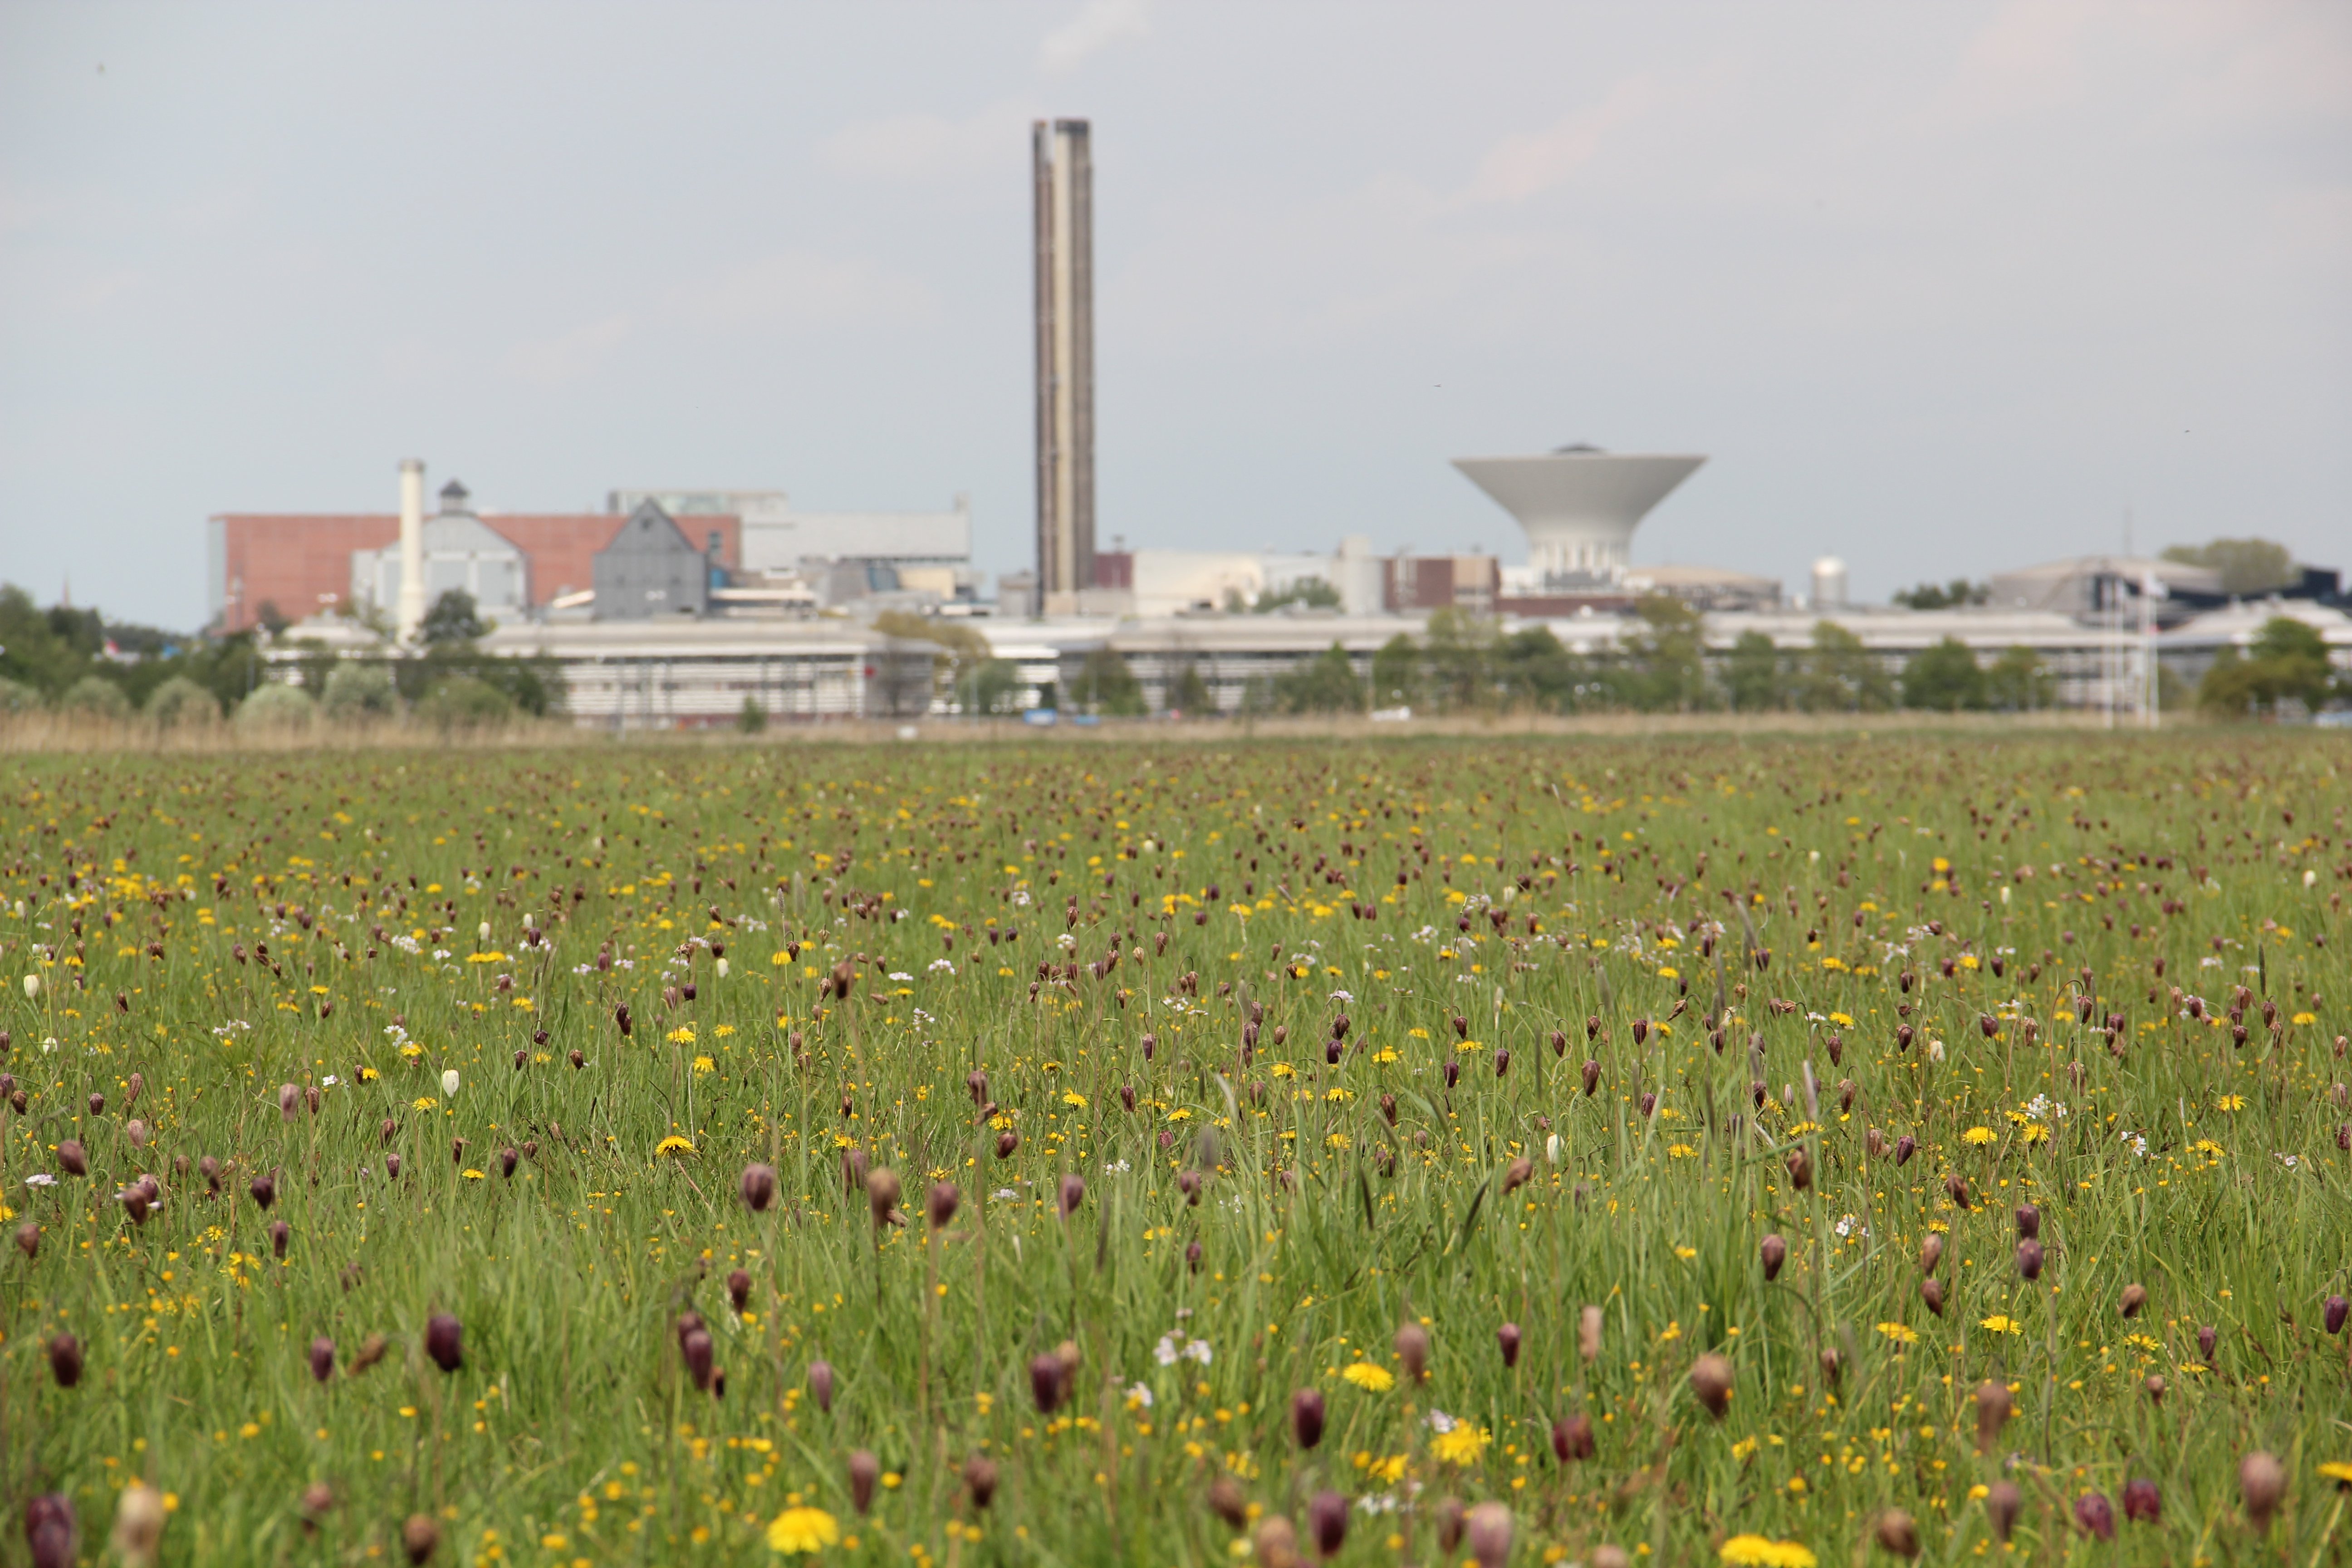 En blomsteräng med mängder av blommor i lila, gult och vitt. I bakgrunden syns ett industriområde.